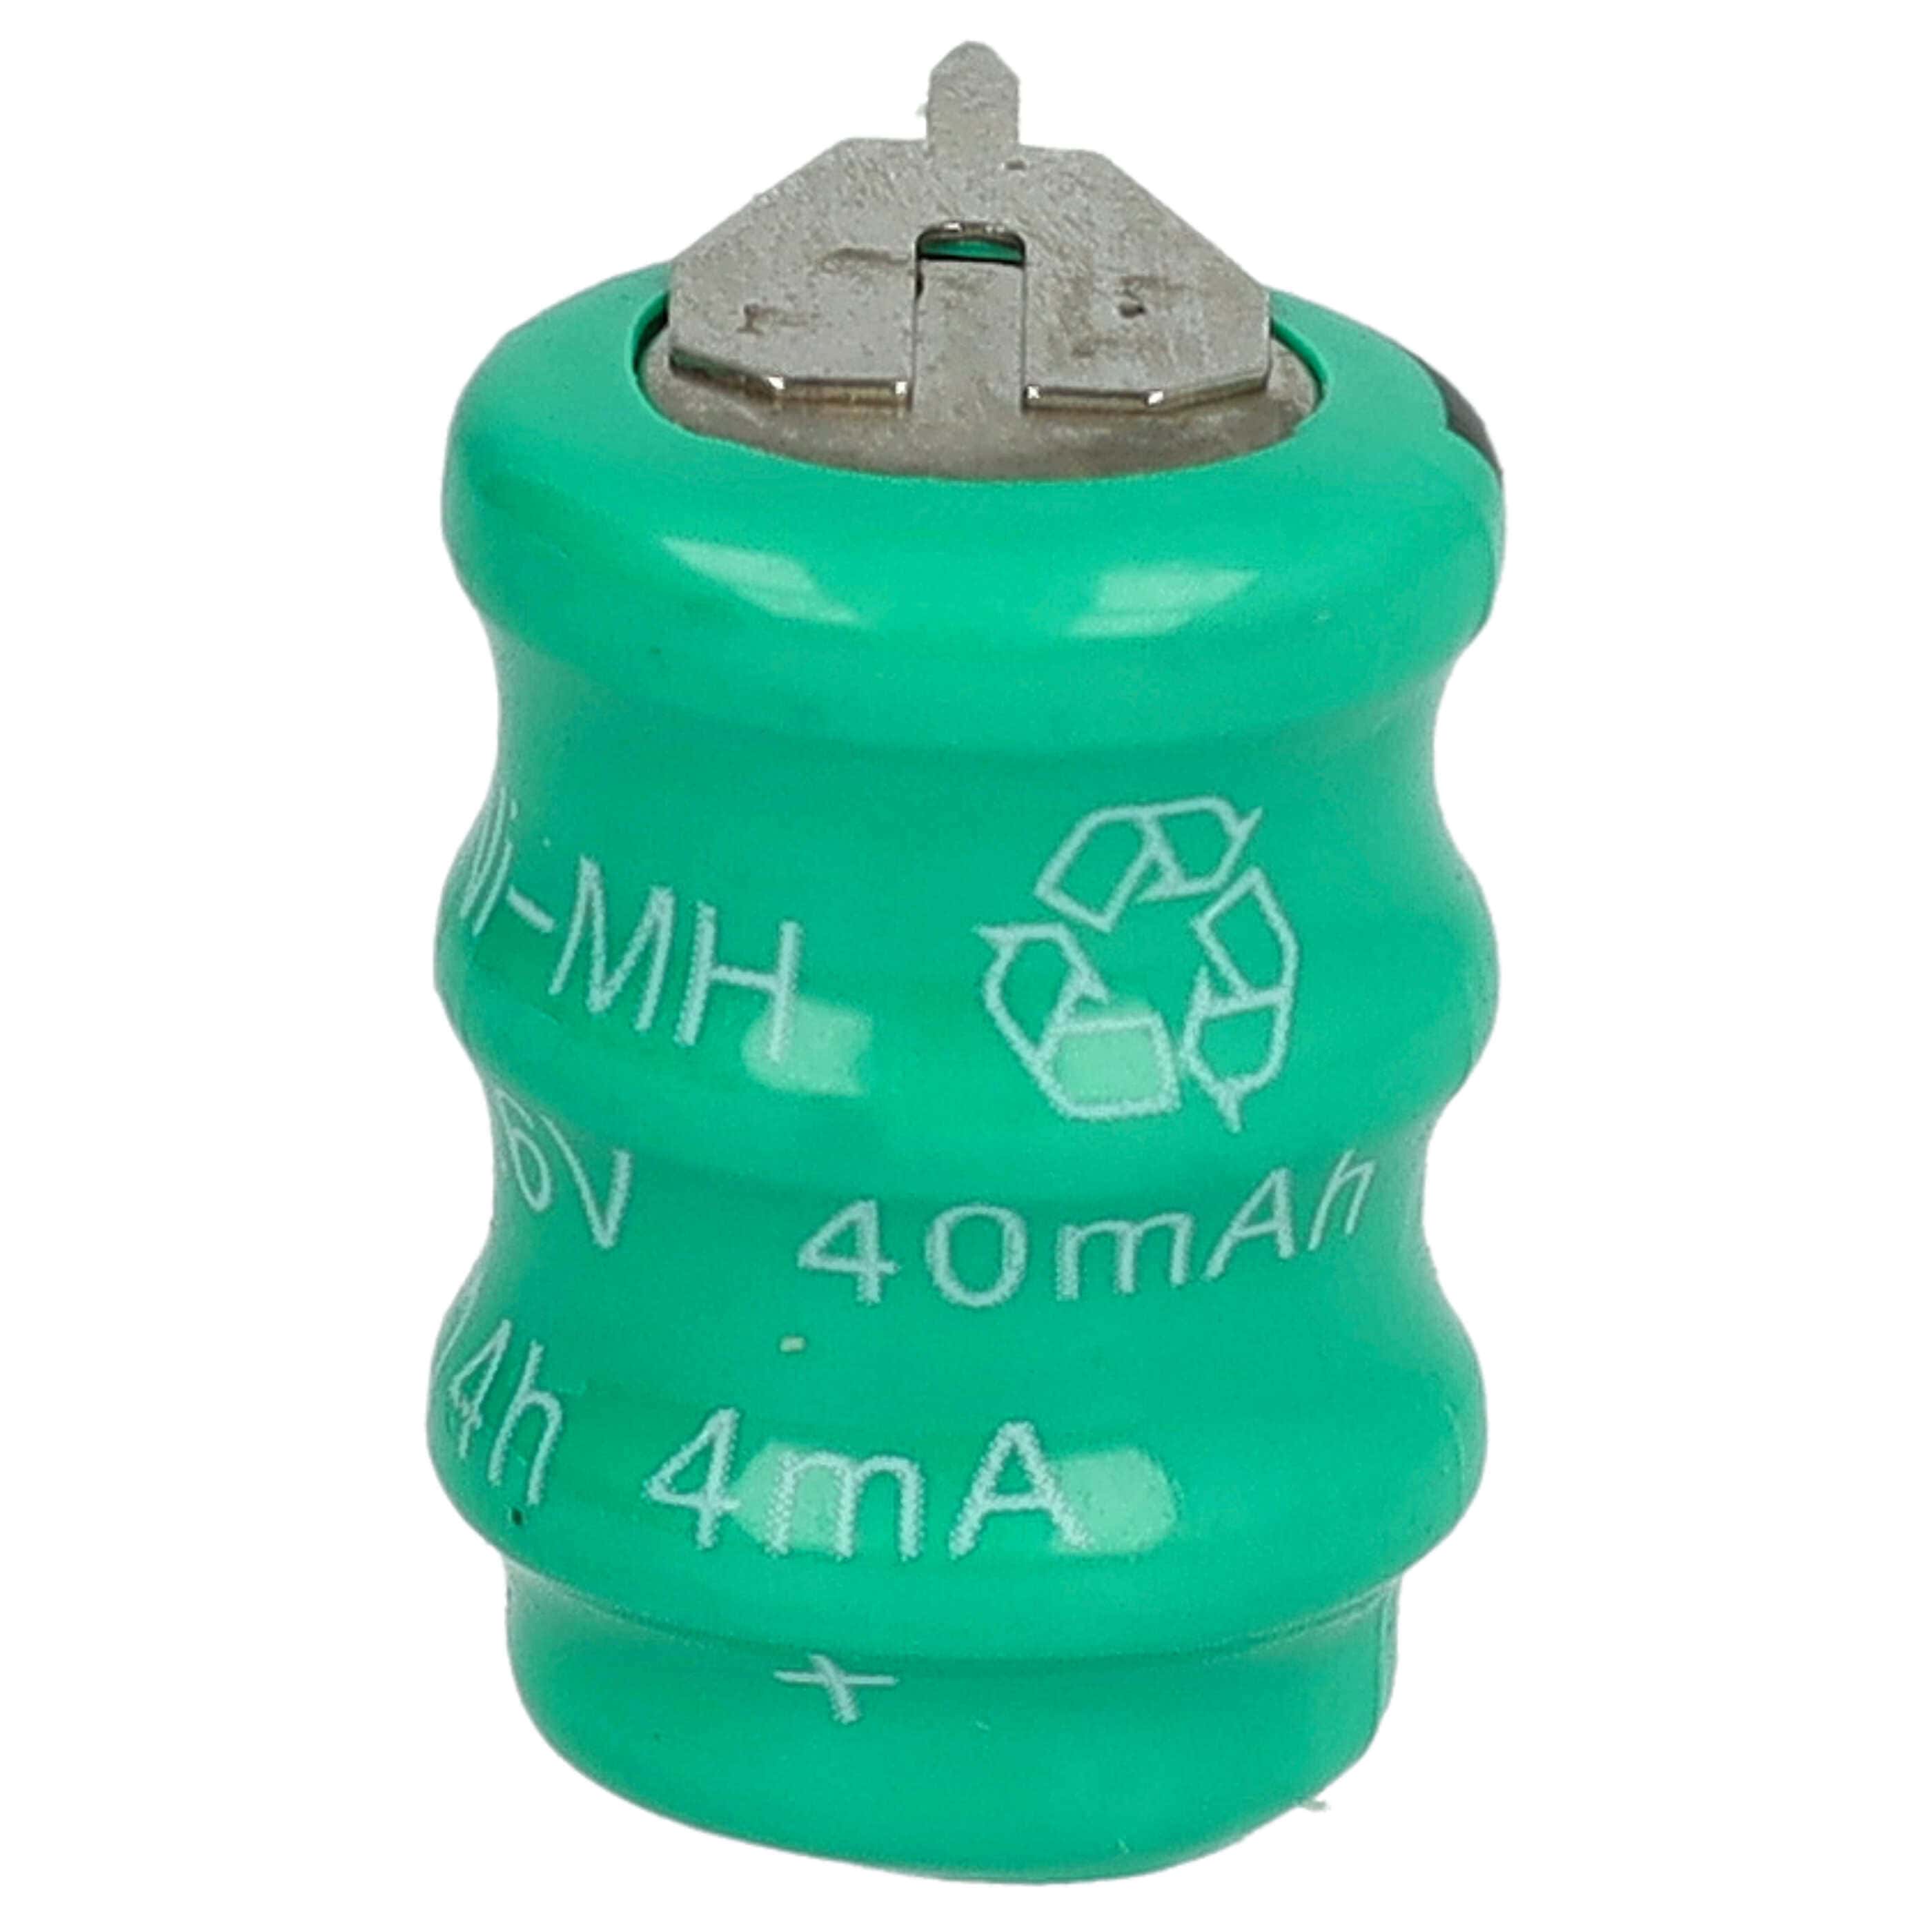 Batteria a bottone (3x cella) tipo V40H 3 pin sostituisce V40H per modellismo, luci solari ecc. 